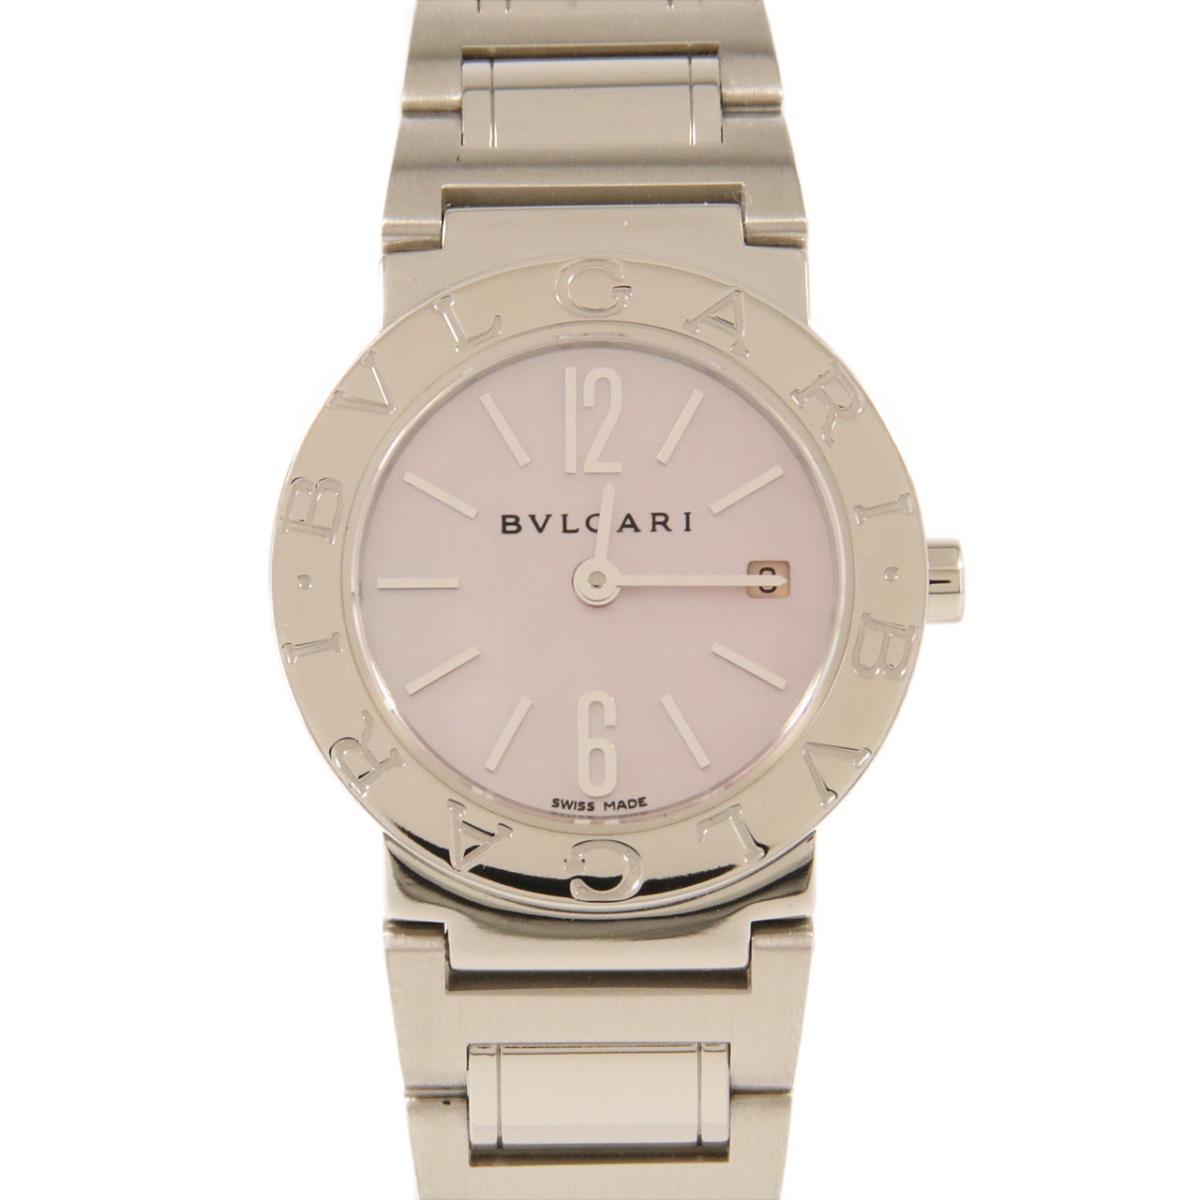 価格帯[20万円台] ブルガリ(BVLGARI)の腕時計 販売情報一覧 - 腕時計 